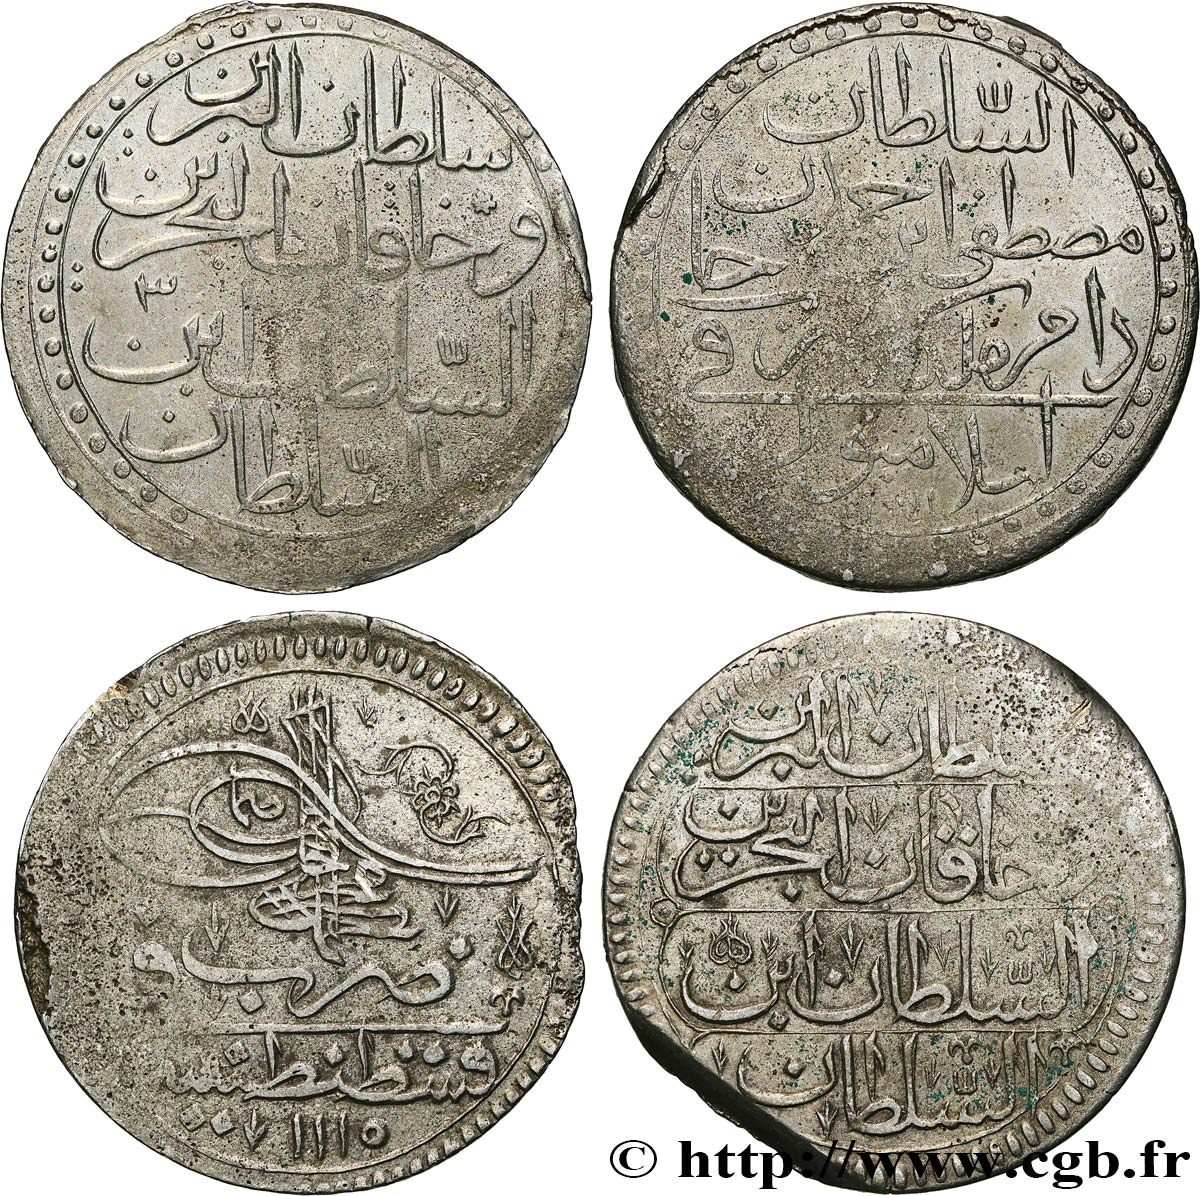 LOTTE Lot de deux monnaies ottomanes n.d.  BB 